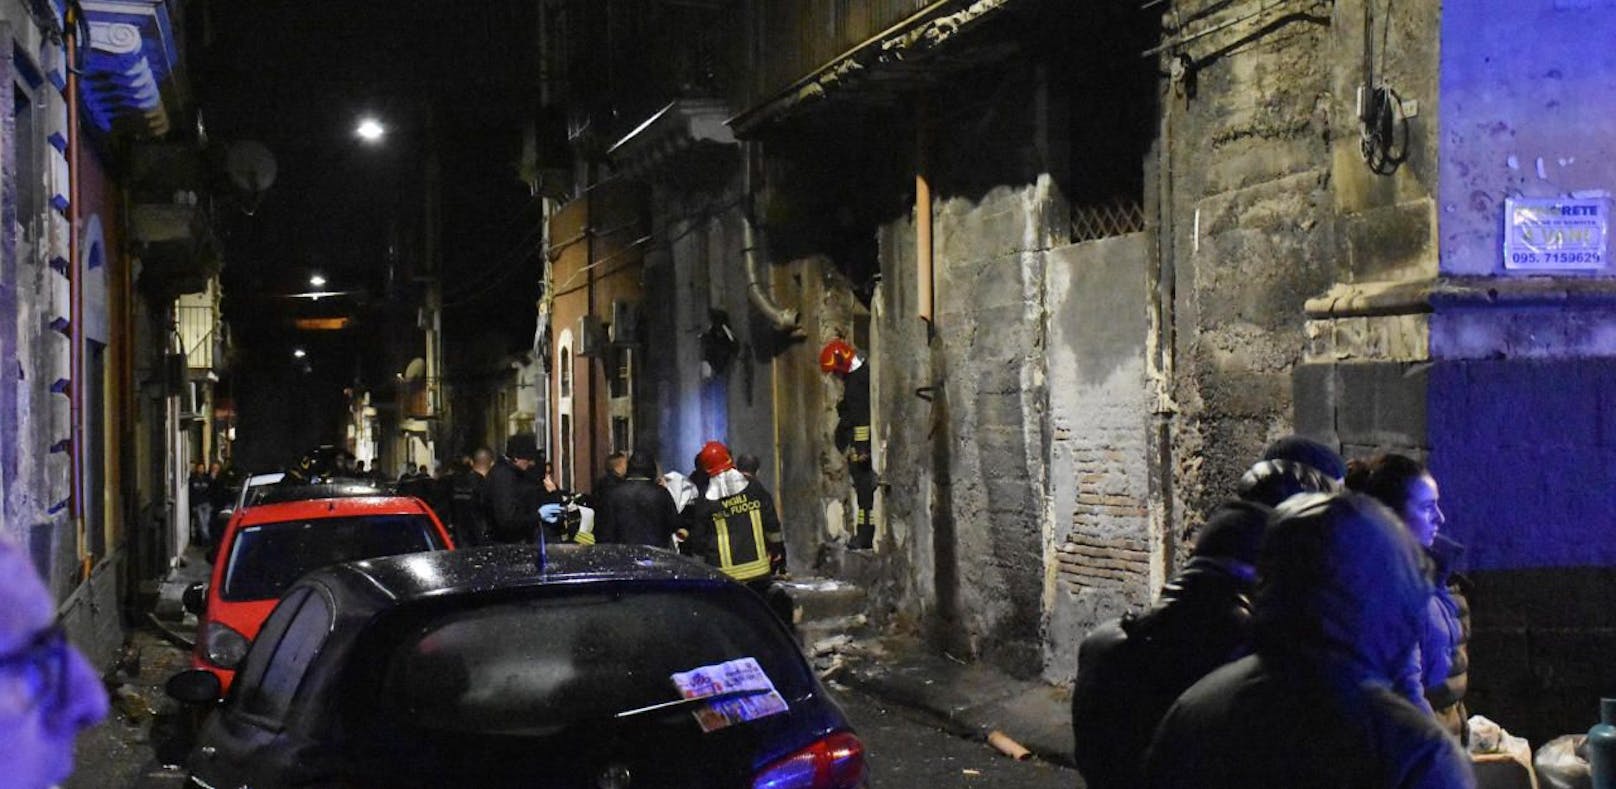 Die Gasexplosion in Catania (Sizilien) kostete drei Menschen das Leben